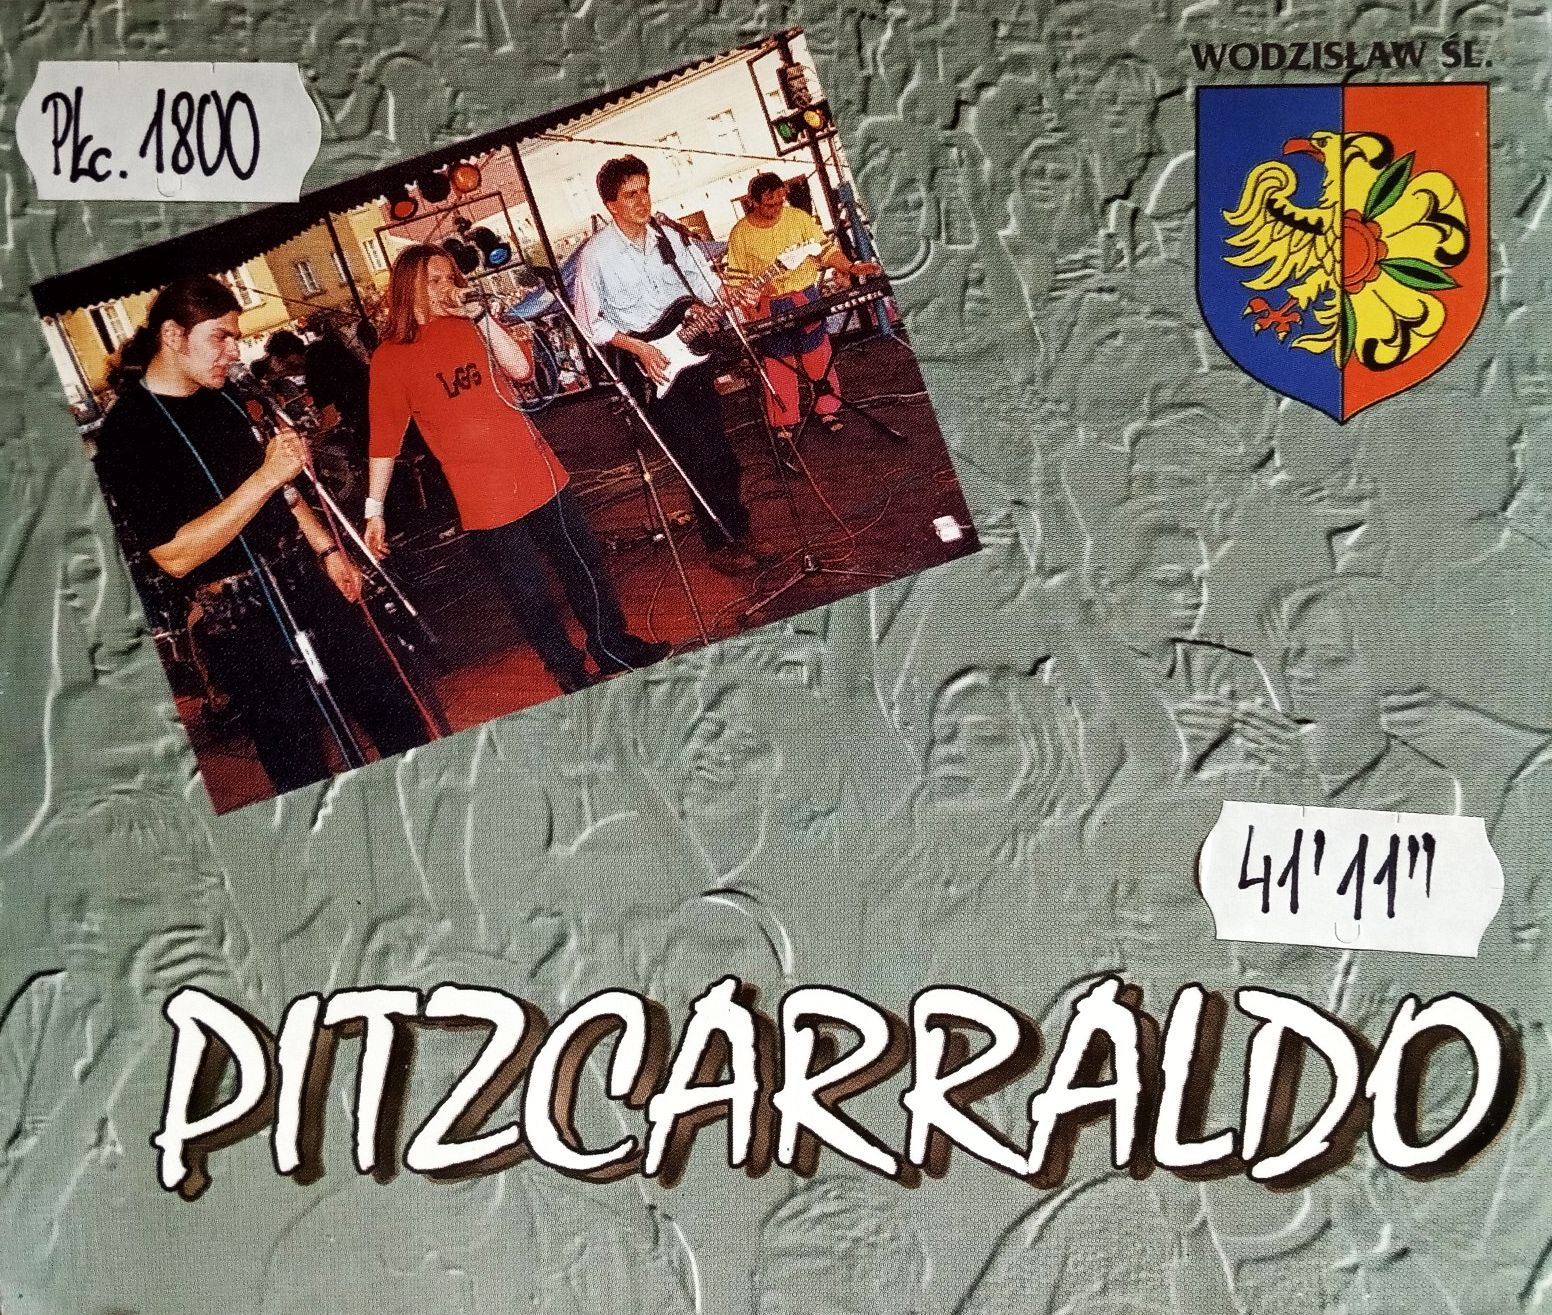 PITZCARRALDO - Pitzcarraldo